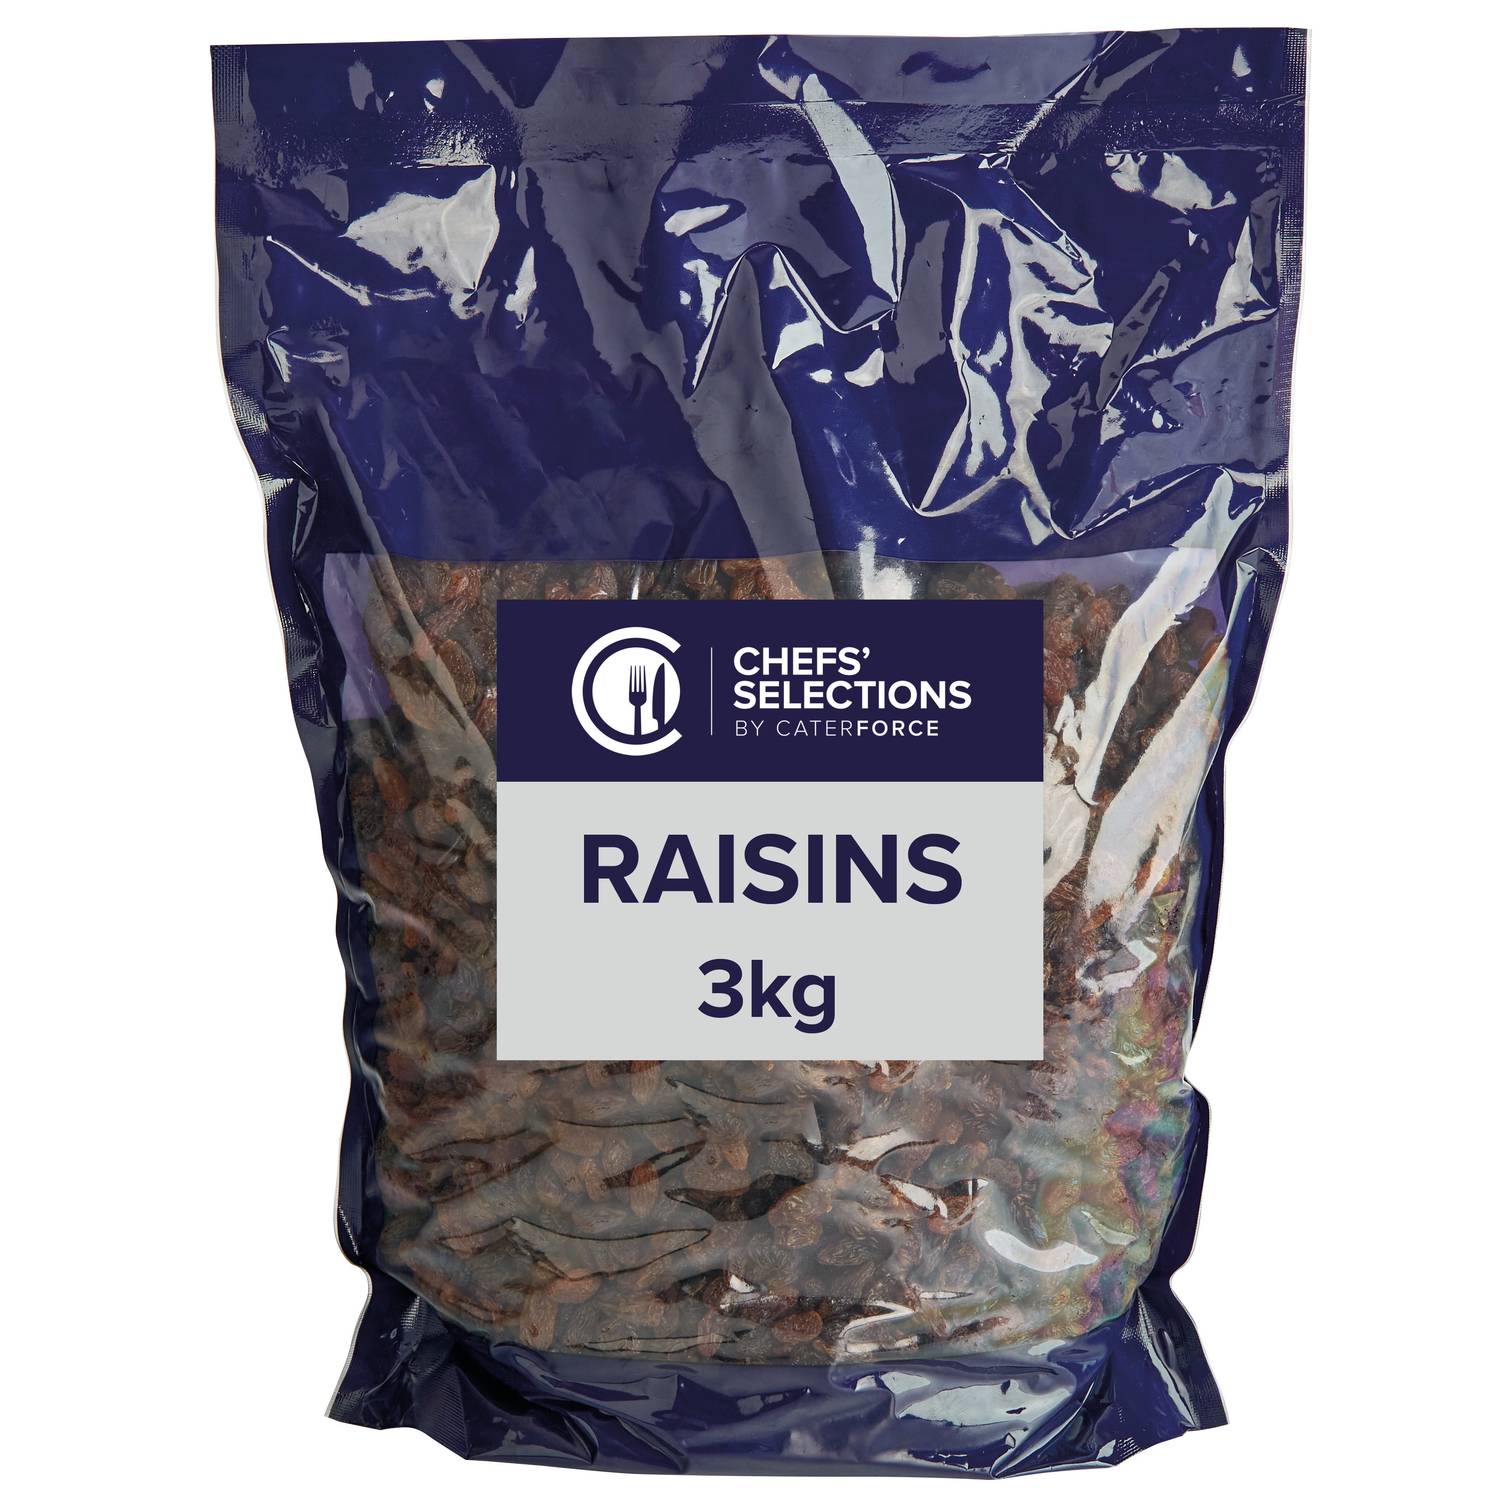 Chefs’ Selections Raisins (4 x 3kg)